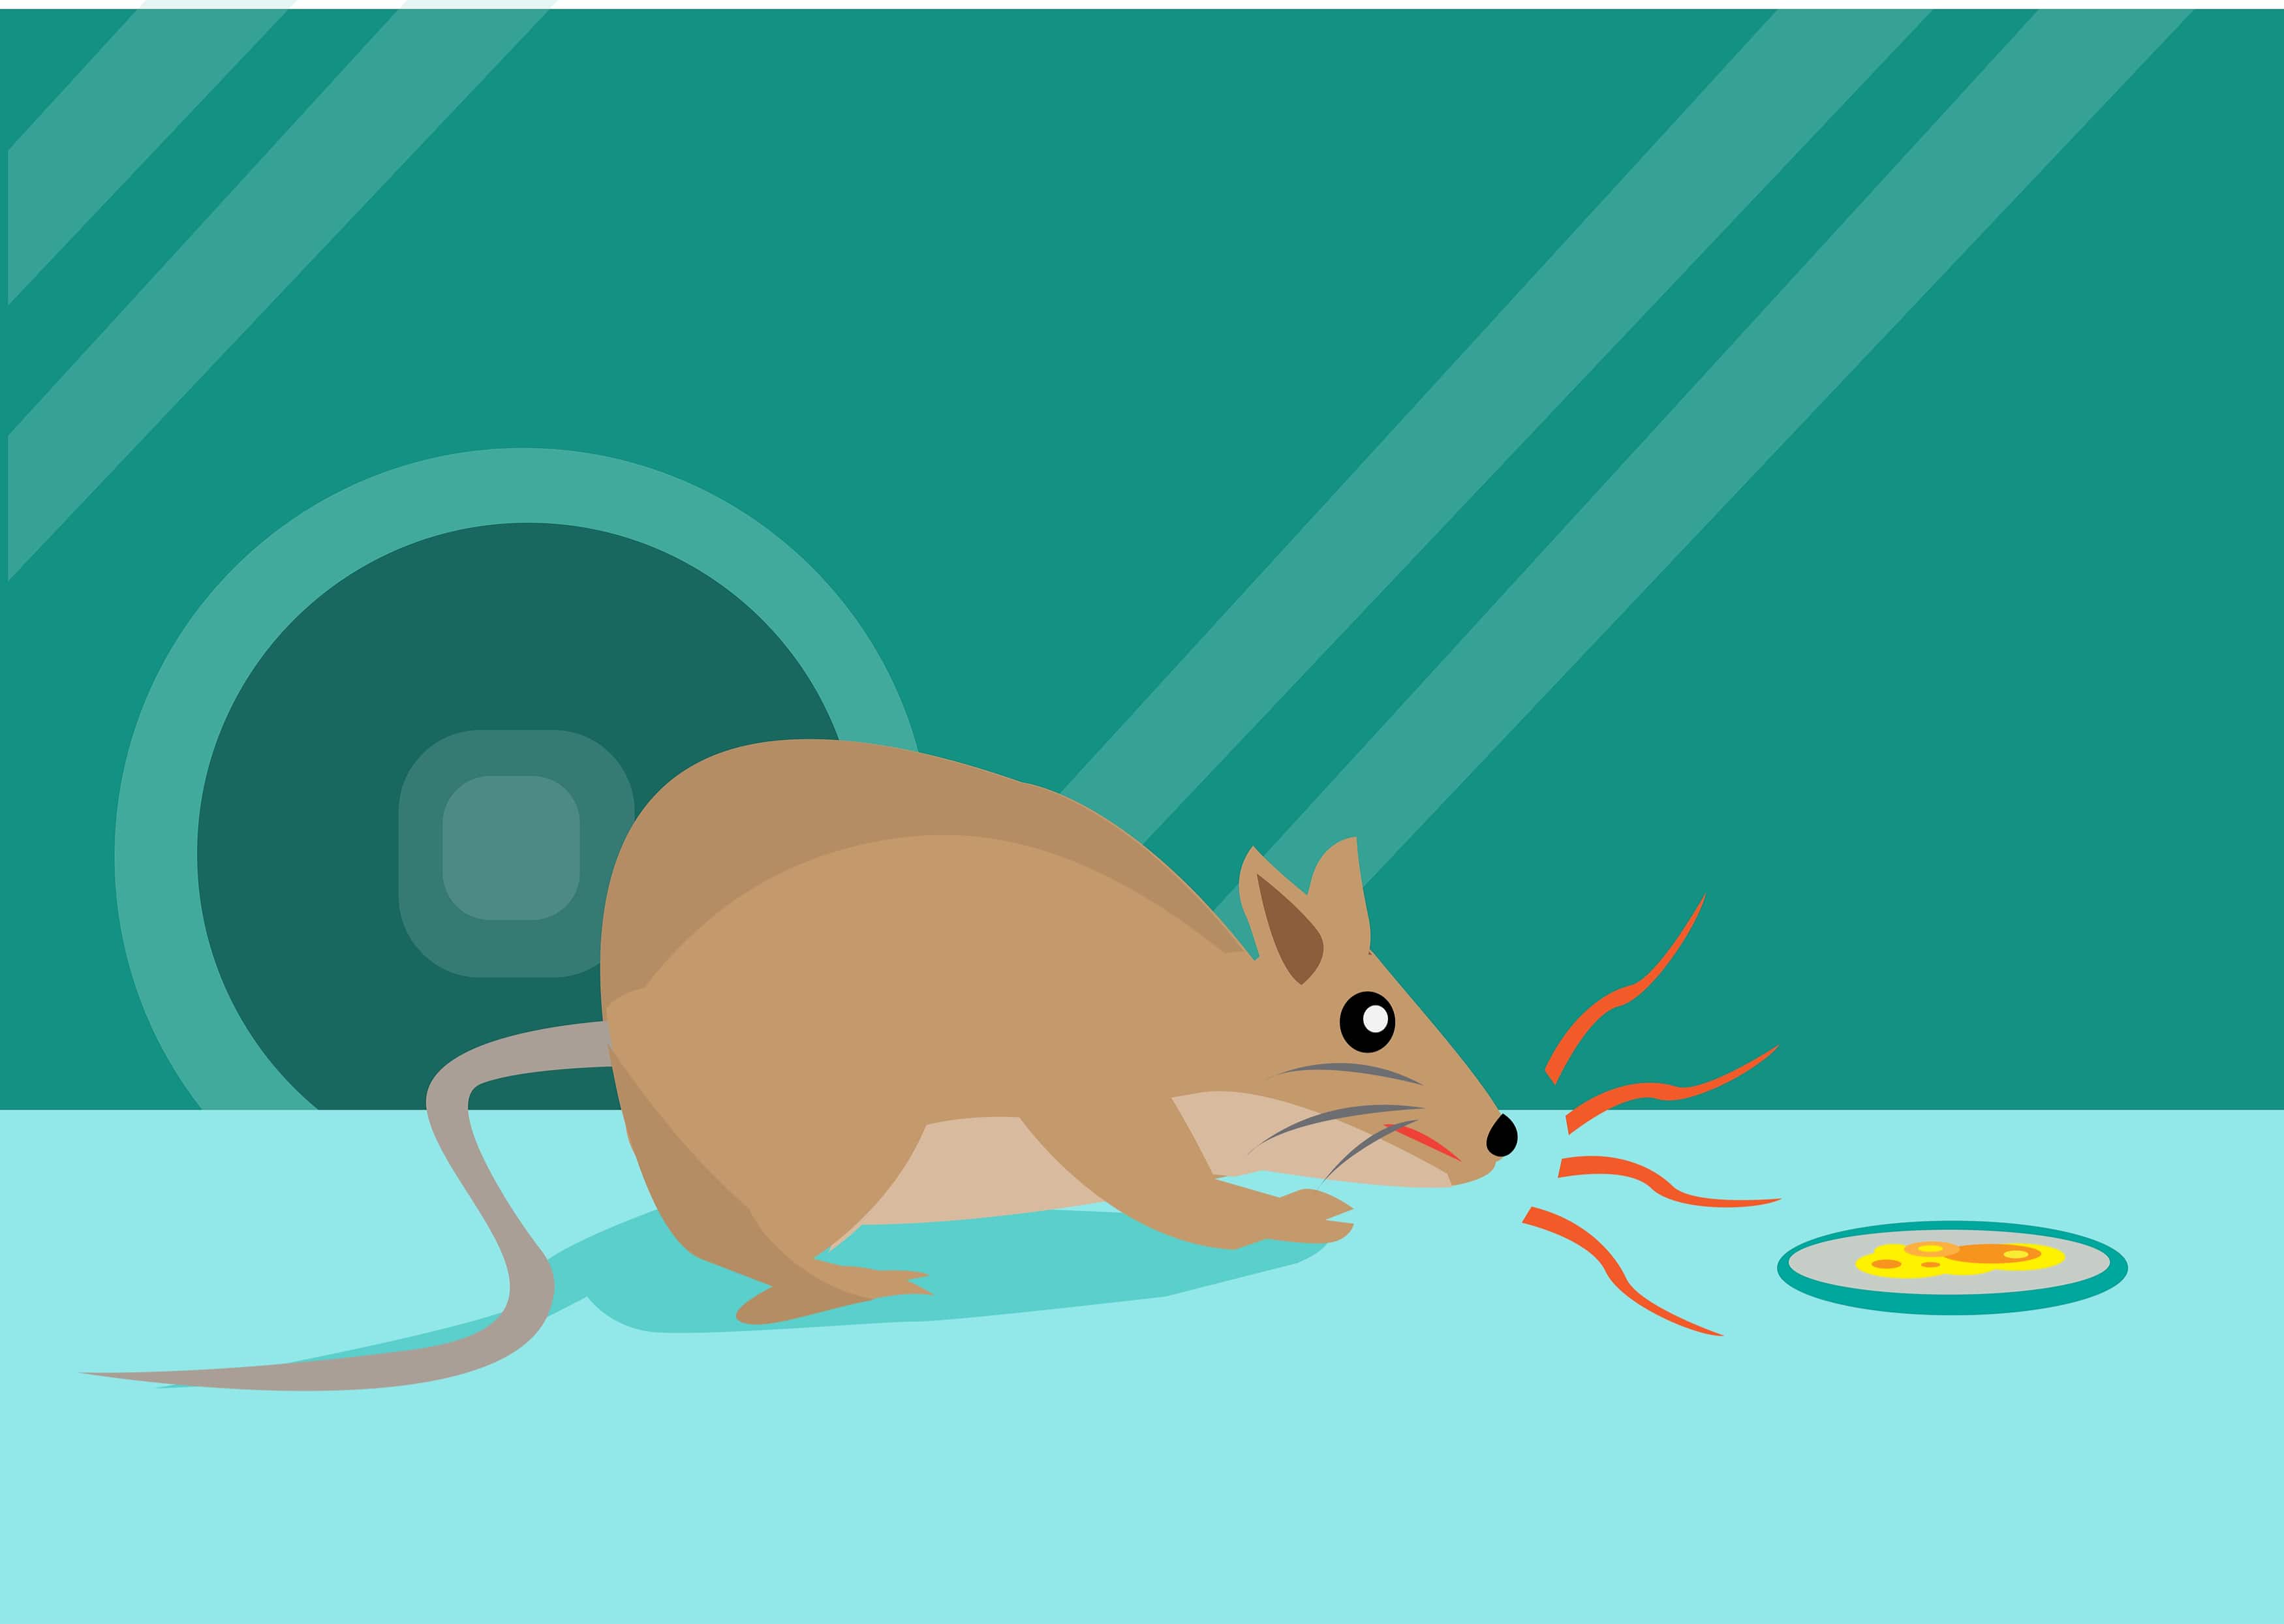 Fosfuro di zinco nel veleno per topi: come funziona?